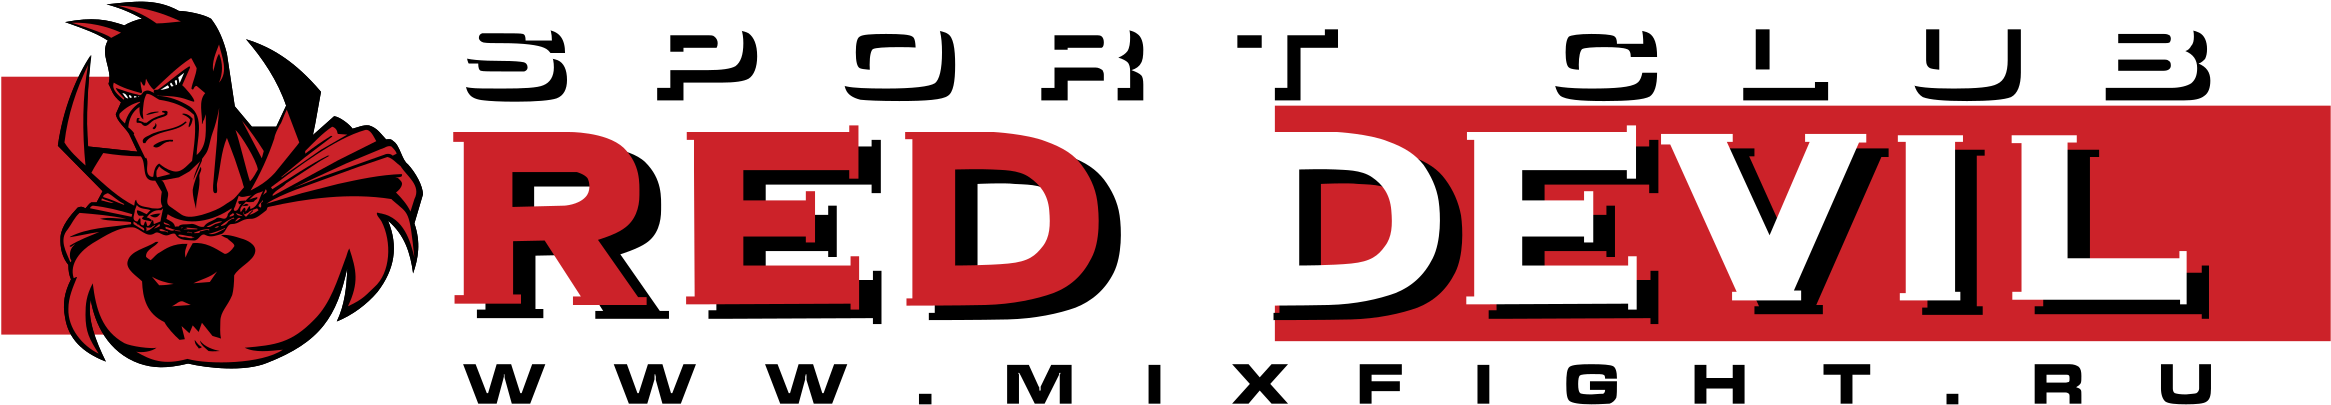 Red Devil Logo Png Transparent - Red Devil (2400x2400), Png Download